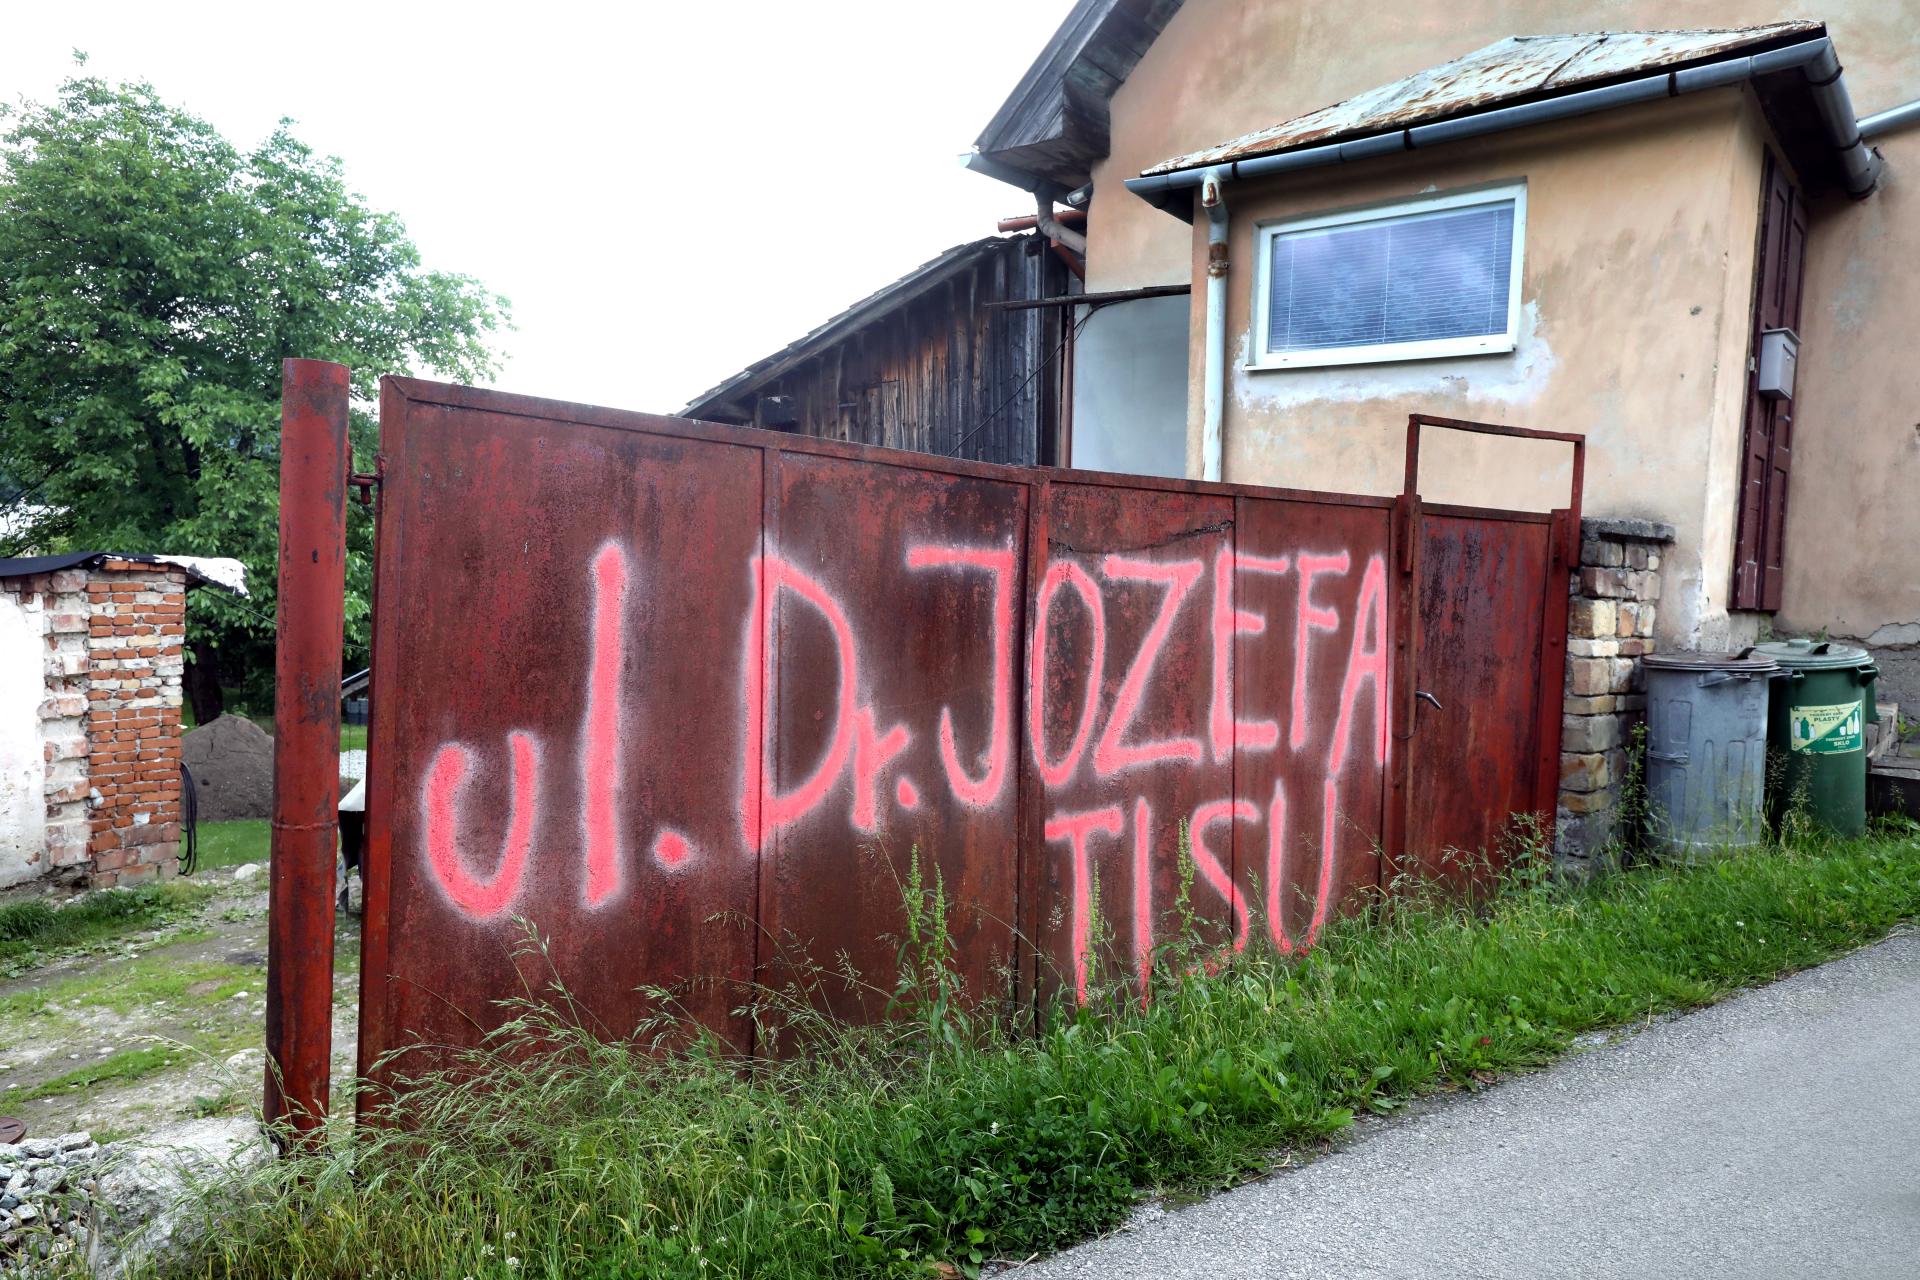 Určenie názvu ulice pomenovanej po Jozefovi Tisovi vo Varíne je nezákonné